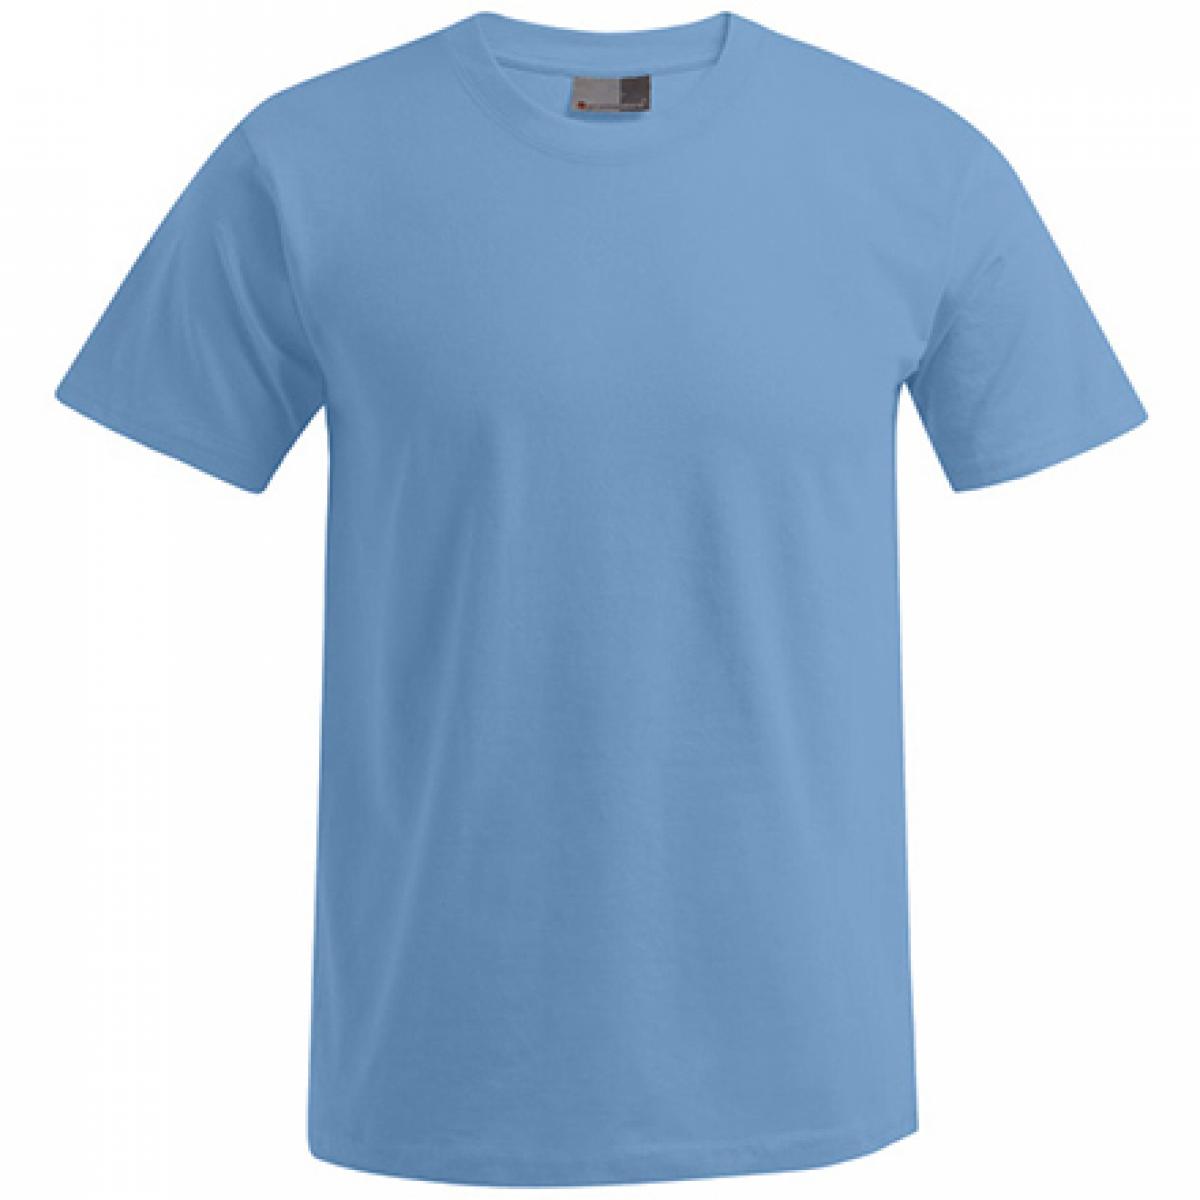 Hersteller: Promodoro Herstellernummer: 3000/3099 Artikelbezeichnung: Men´s Premium Herren T-Shirt - bis 5XL Farbe: Alaskan Blue